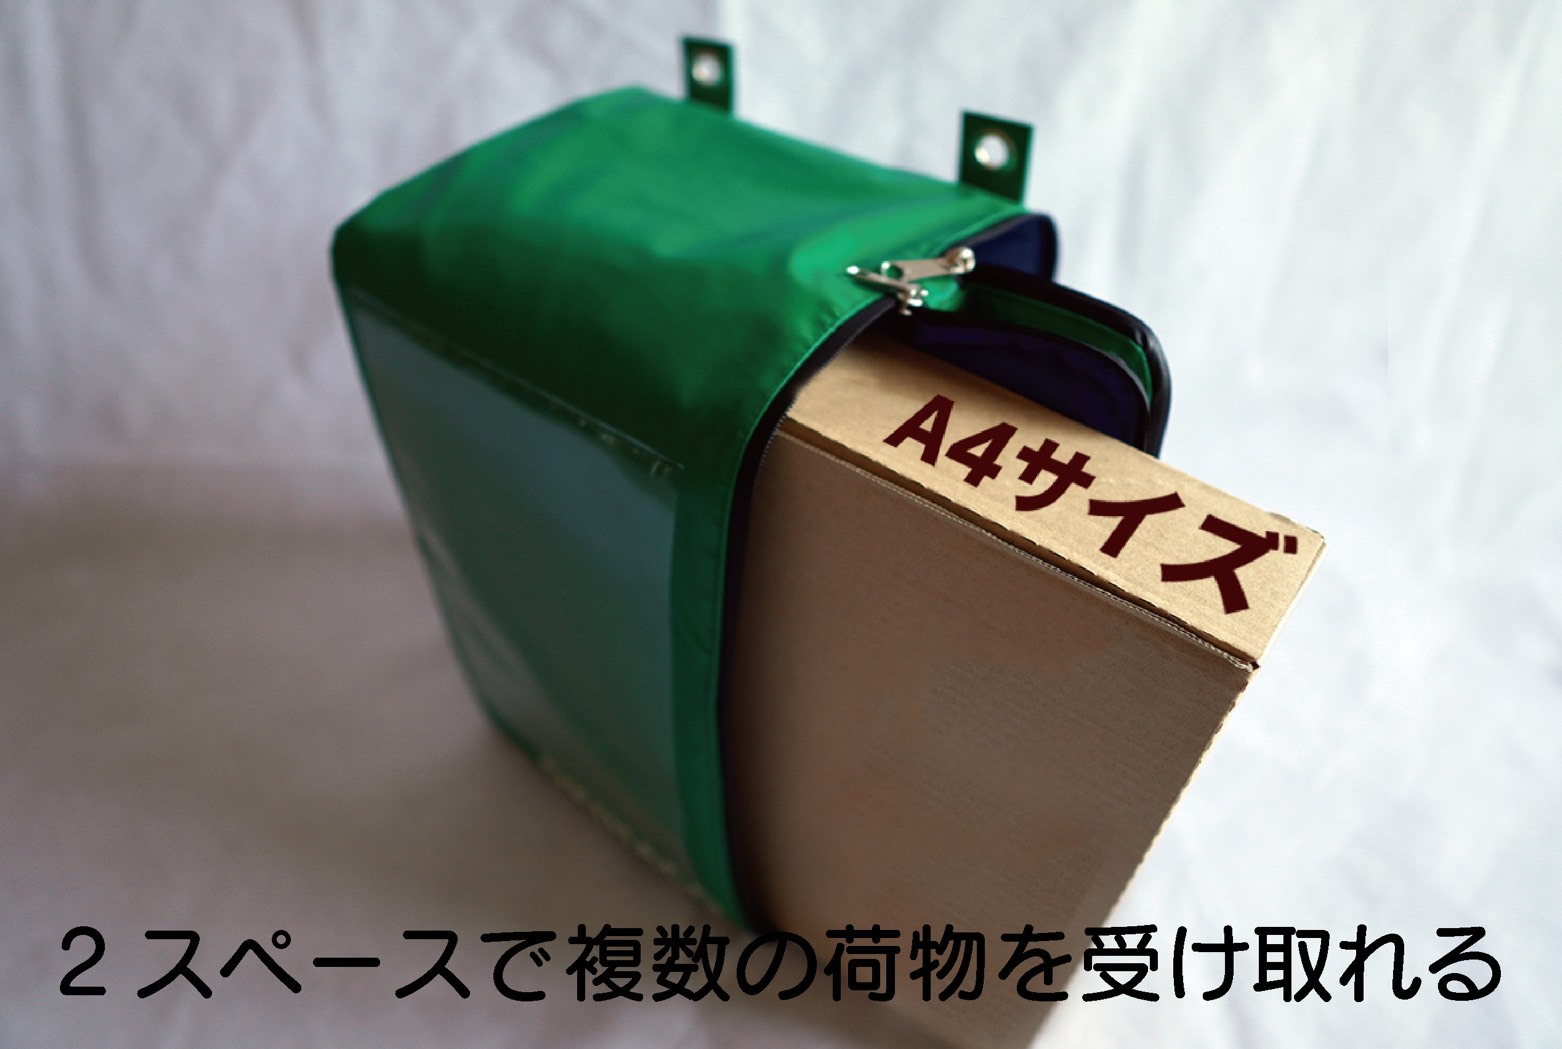 宅配ボックス『OKIHACO mini』がCAMPFIREにて発売！書籍類が曲げて投函